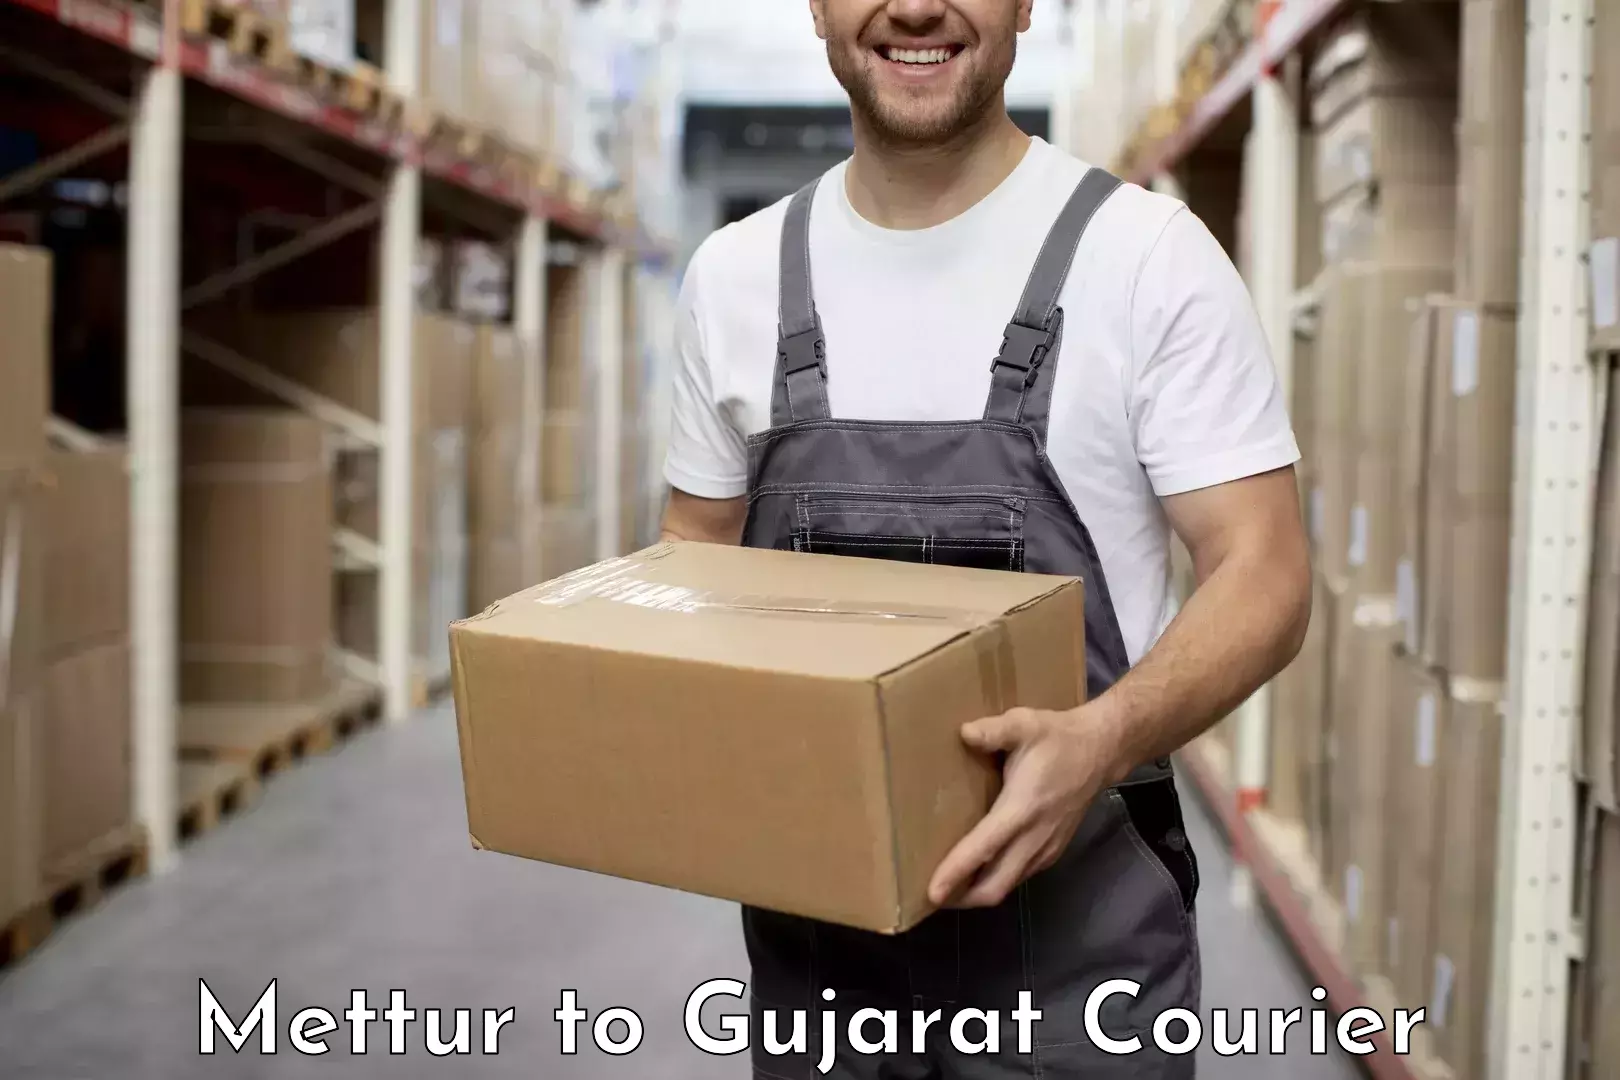 Customer-focused courier Mettur to Bhatiya